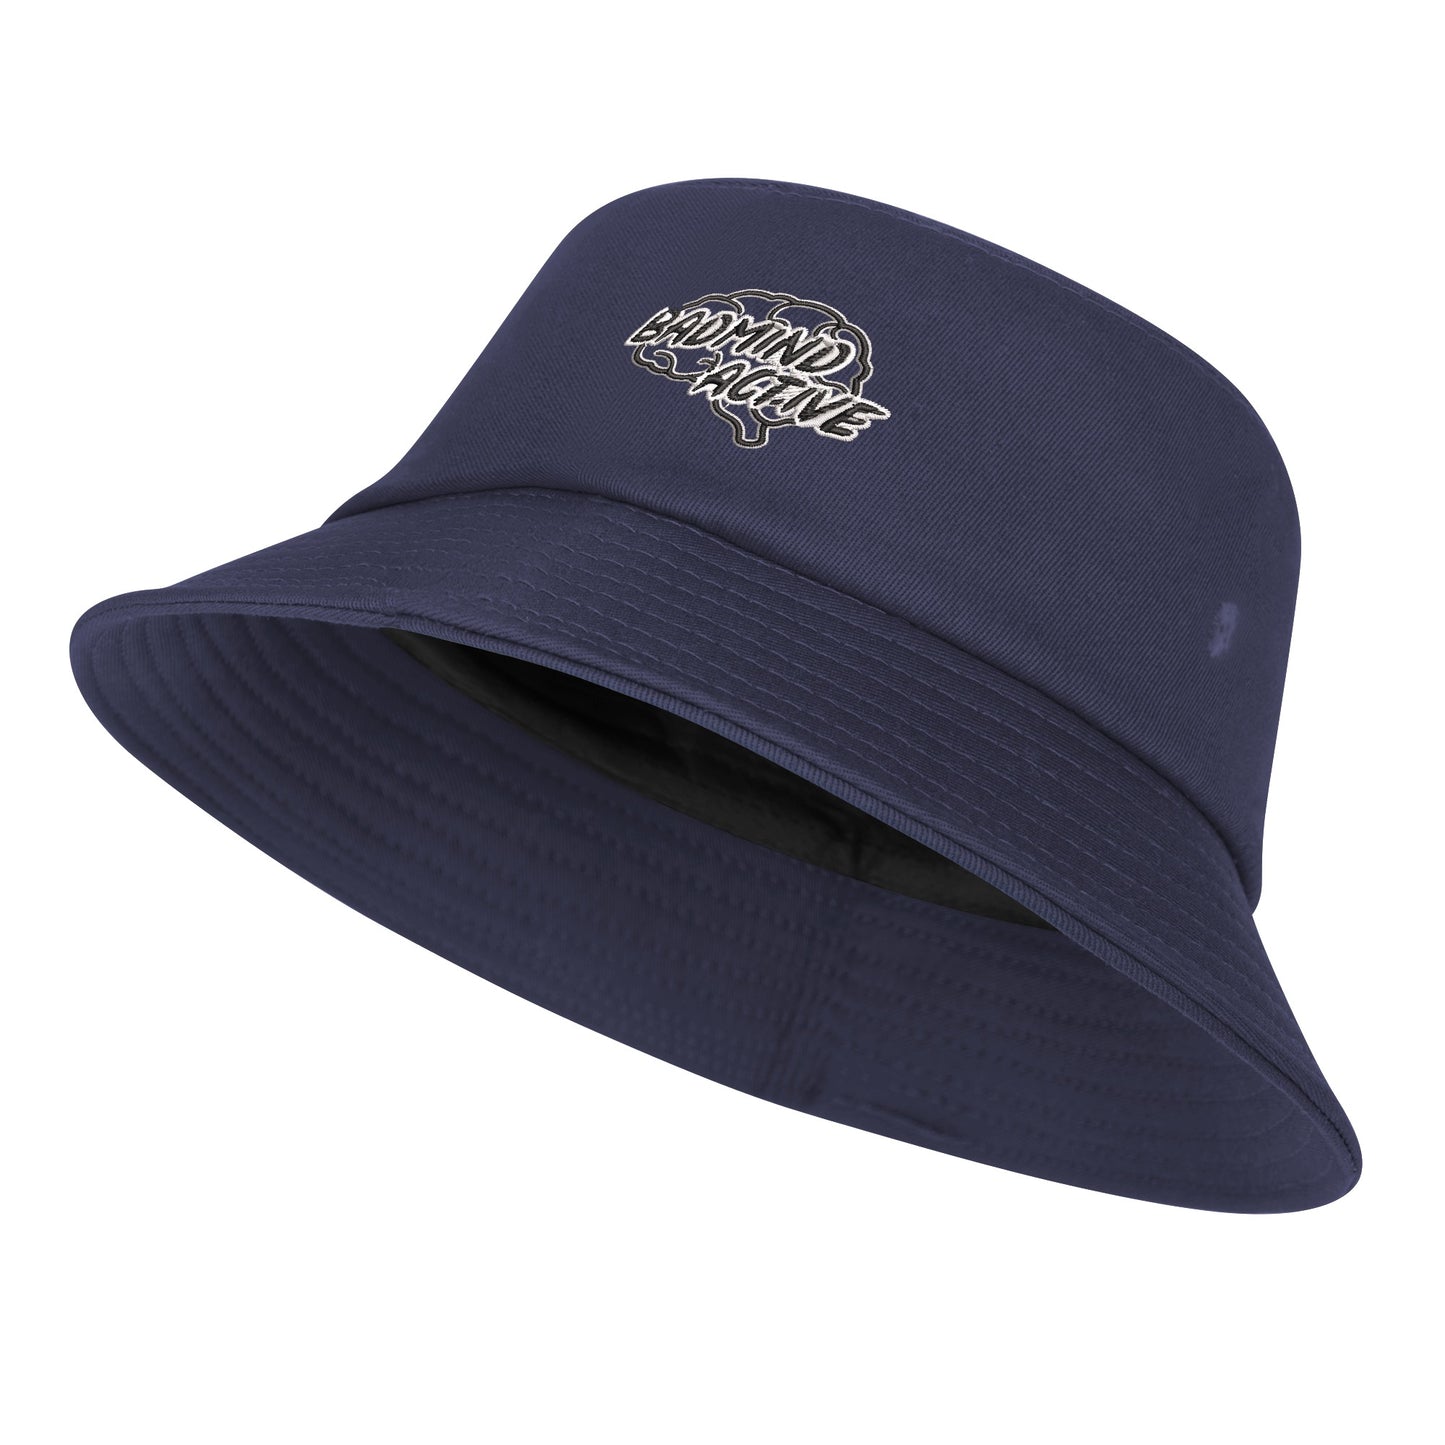 FZ Unisex Bucket Hats - FZwear